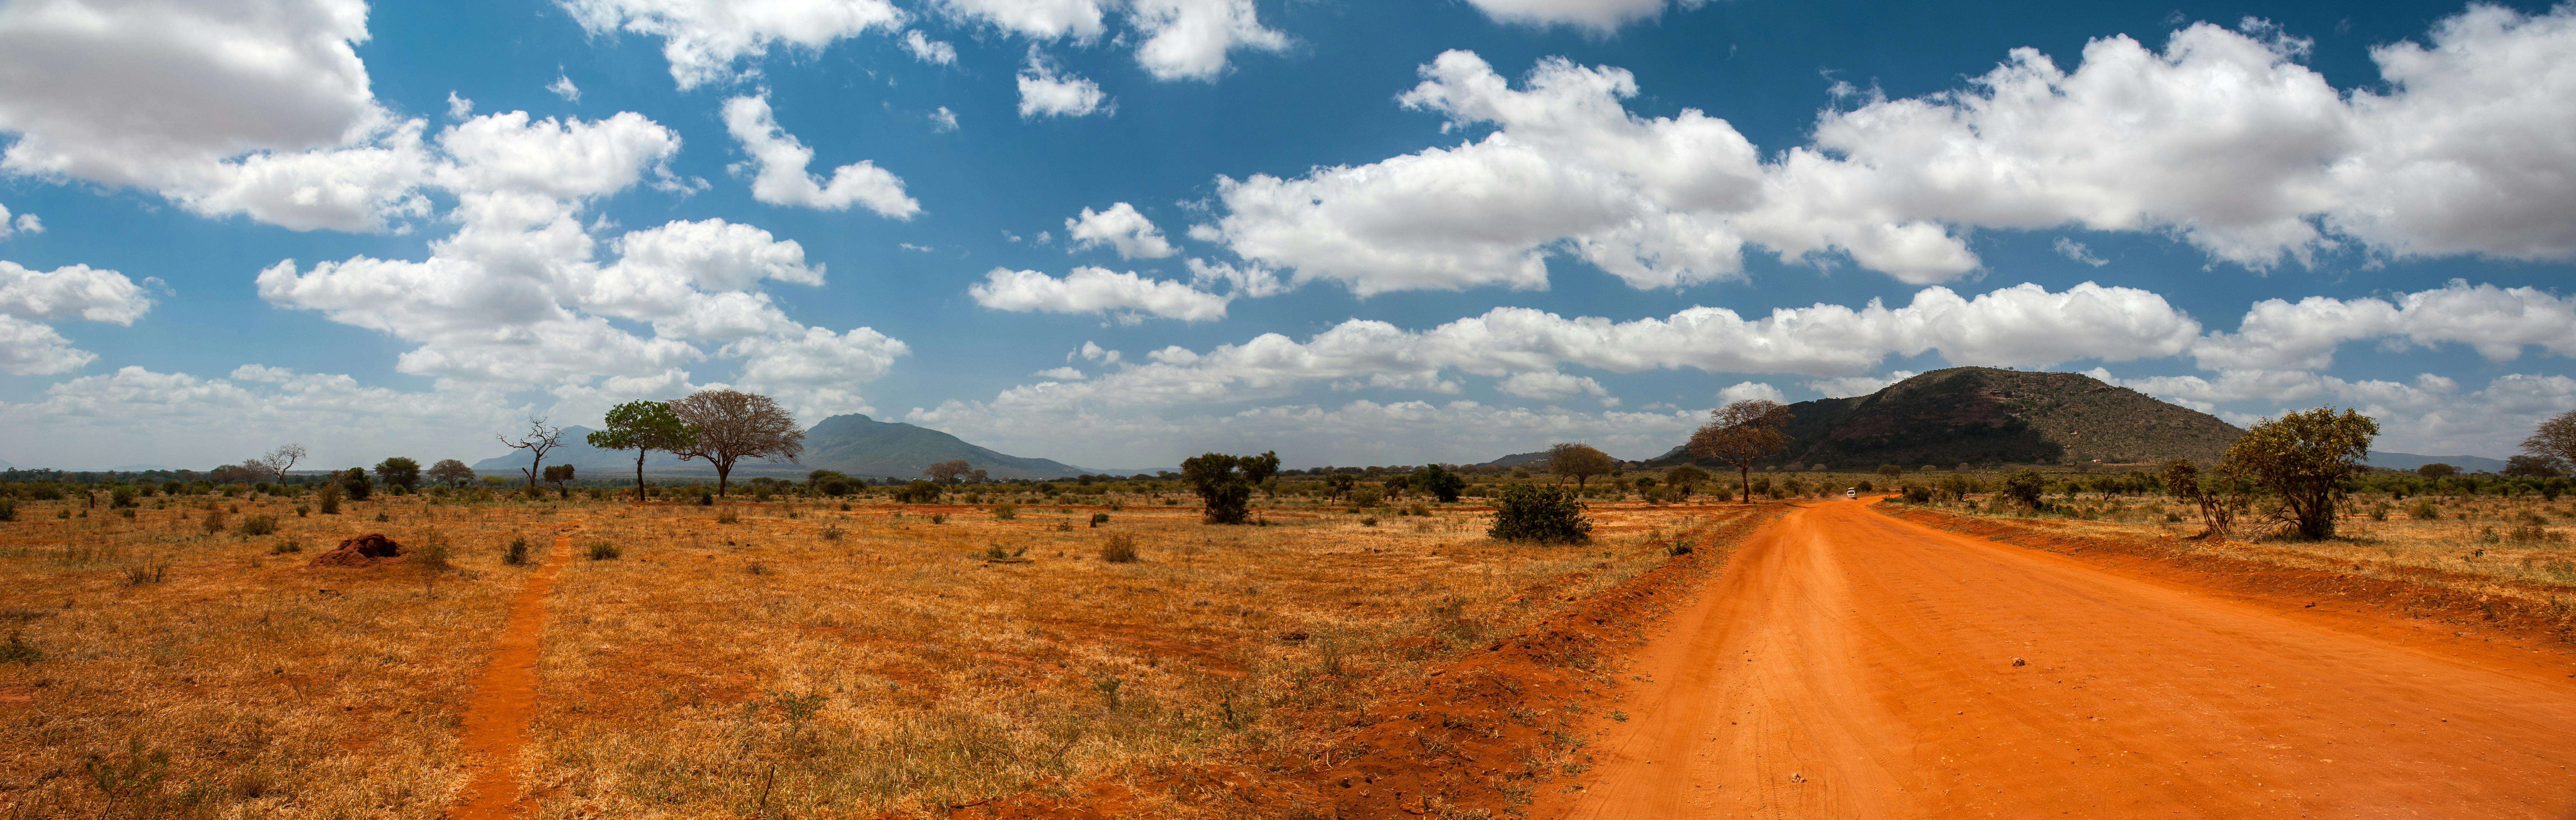 Parcs nationaux et réserves du Kenya